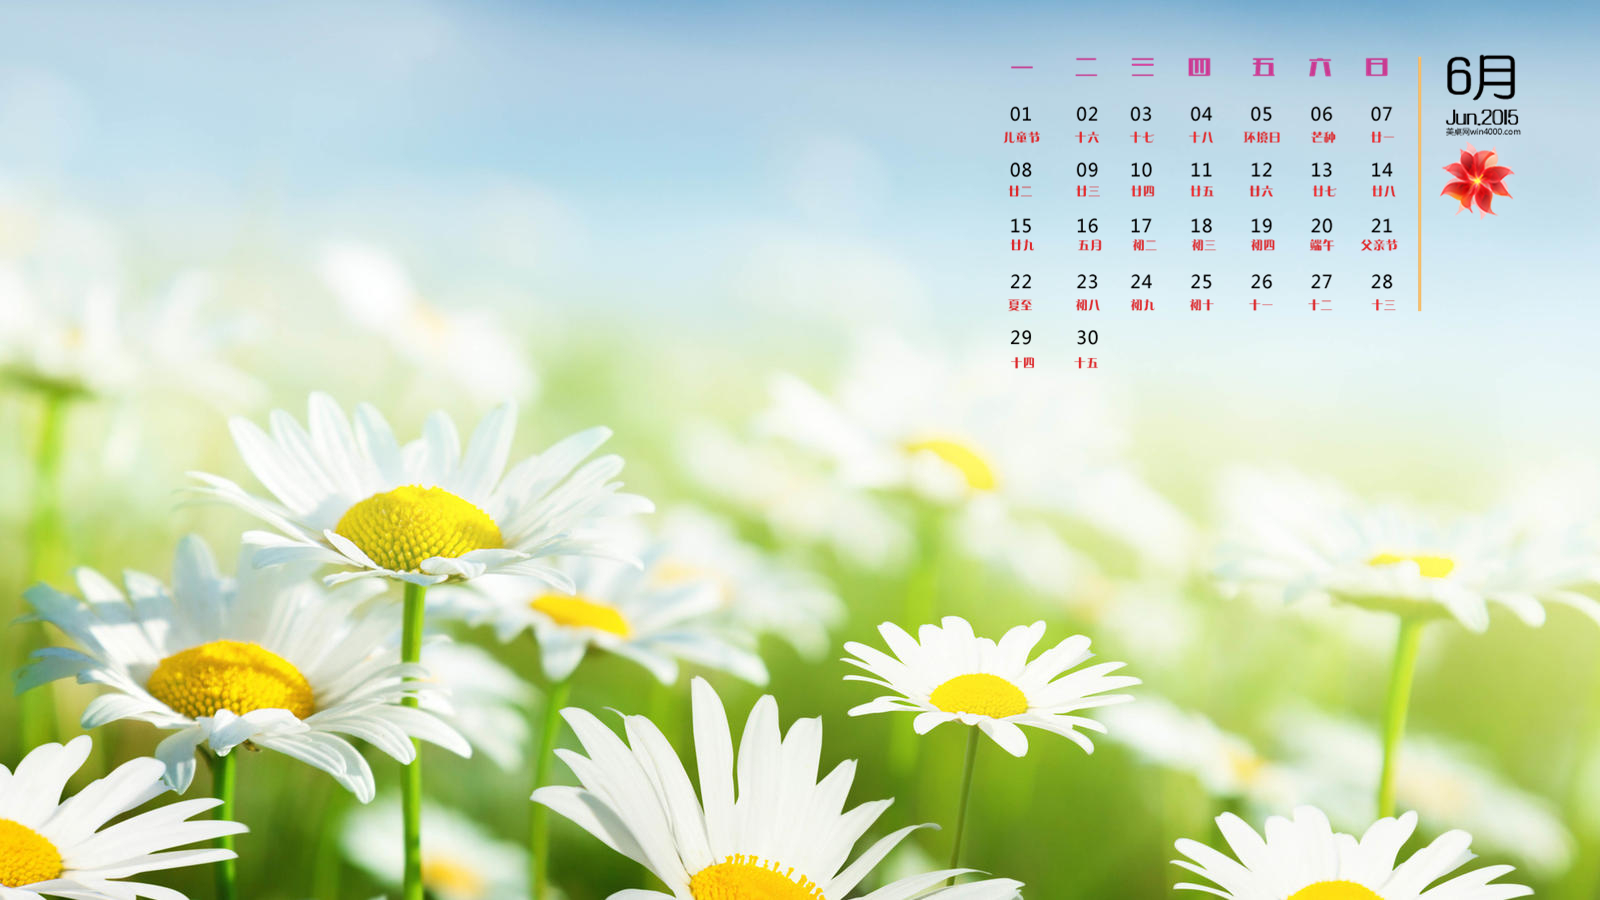 2015年6月日历精选小白花花卉高清植物壁纸下载-日历壁纸-壁纸下载-美桌网